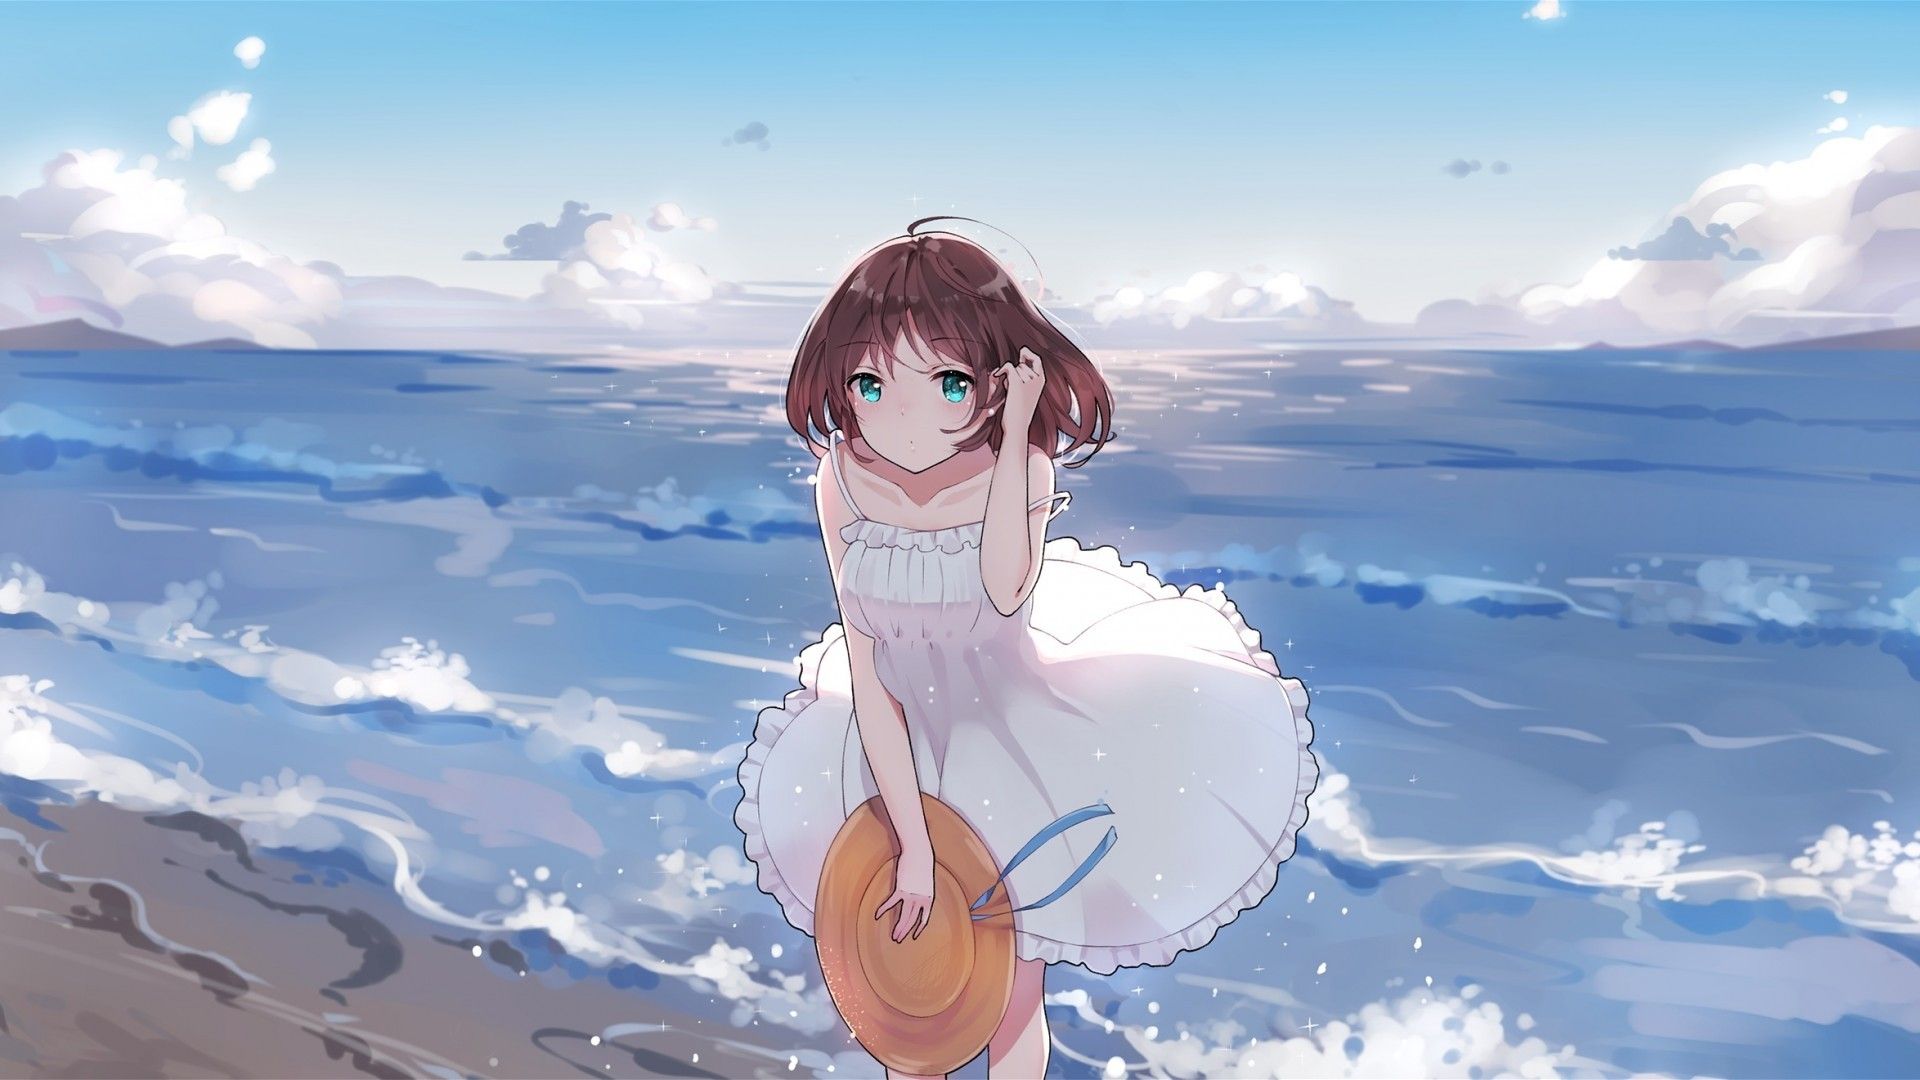 Summer Dress, Anime Girl, Ocean, Waves, Beach, Short HD Wallpaper